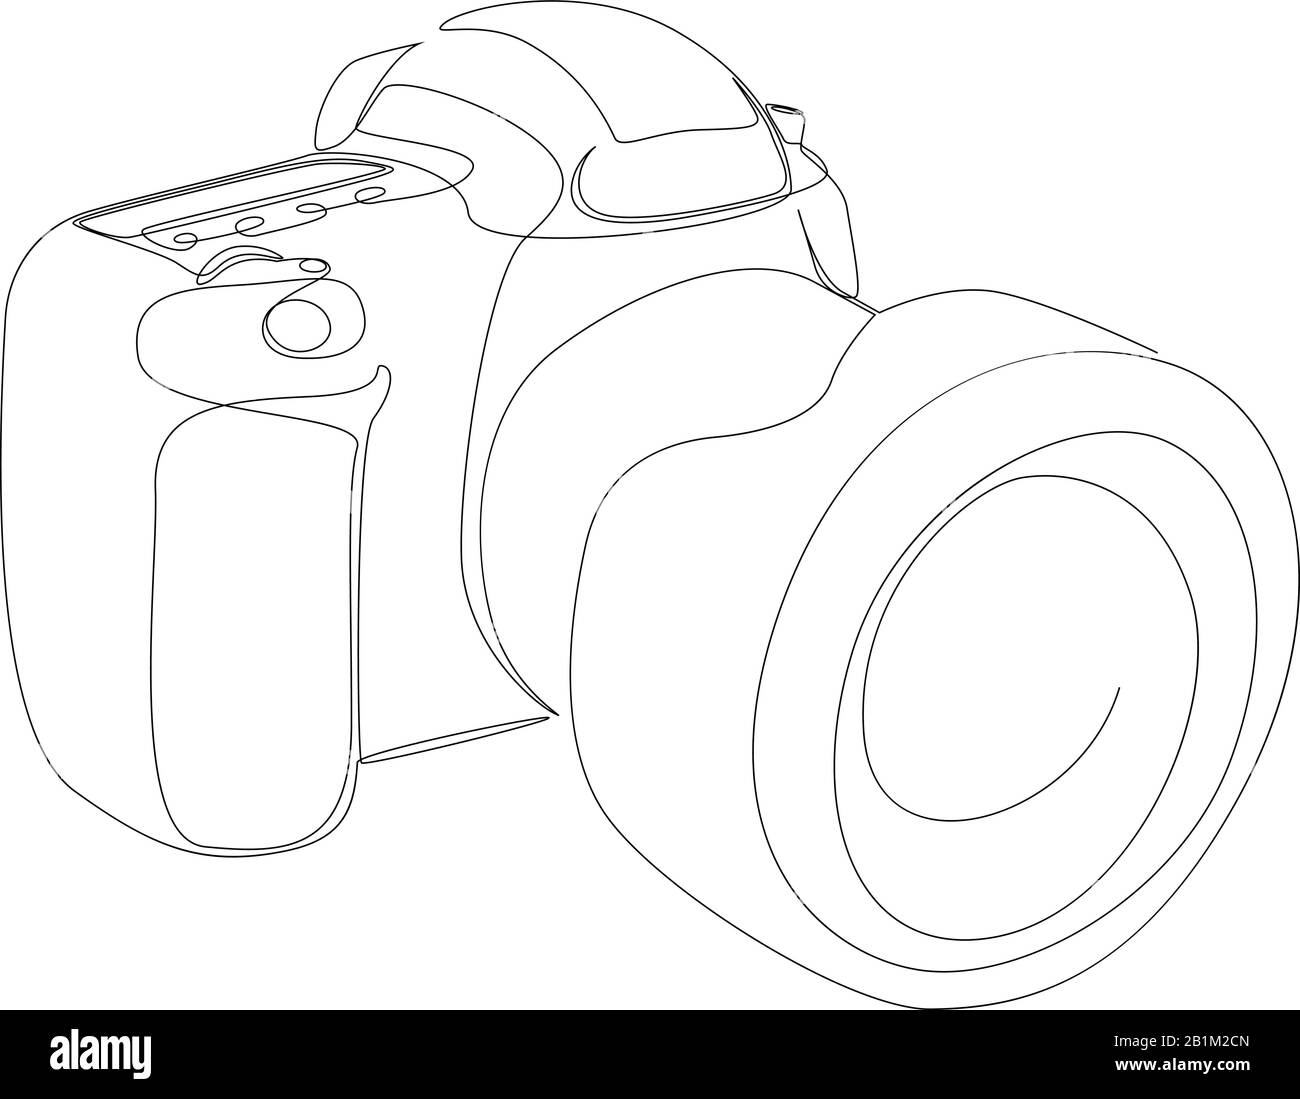 DSLR-Kamera mit digitalem Vektor und einer durchgehenden einzeiligen Zeichnung. Minimaler Kunststil. Fotografie Equipment Konzept Continuous Line Draw Design illus Stock Vektor